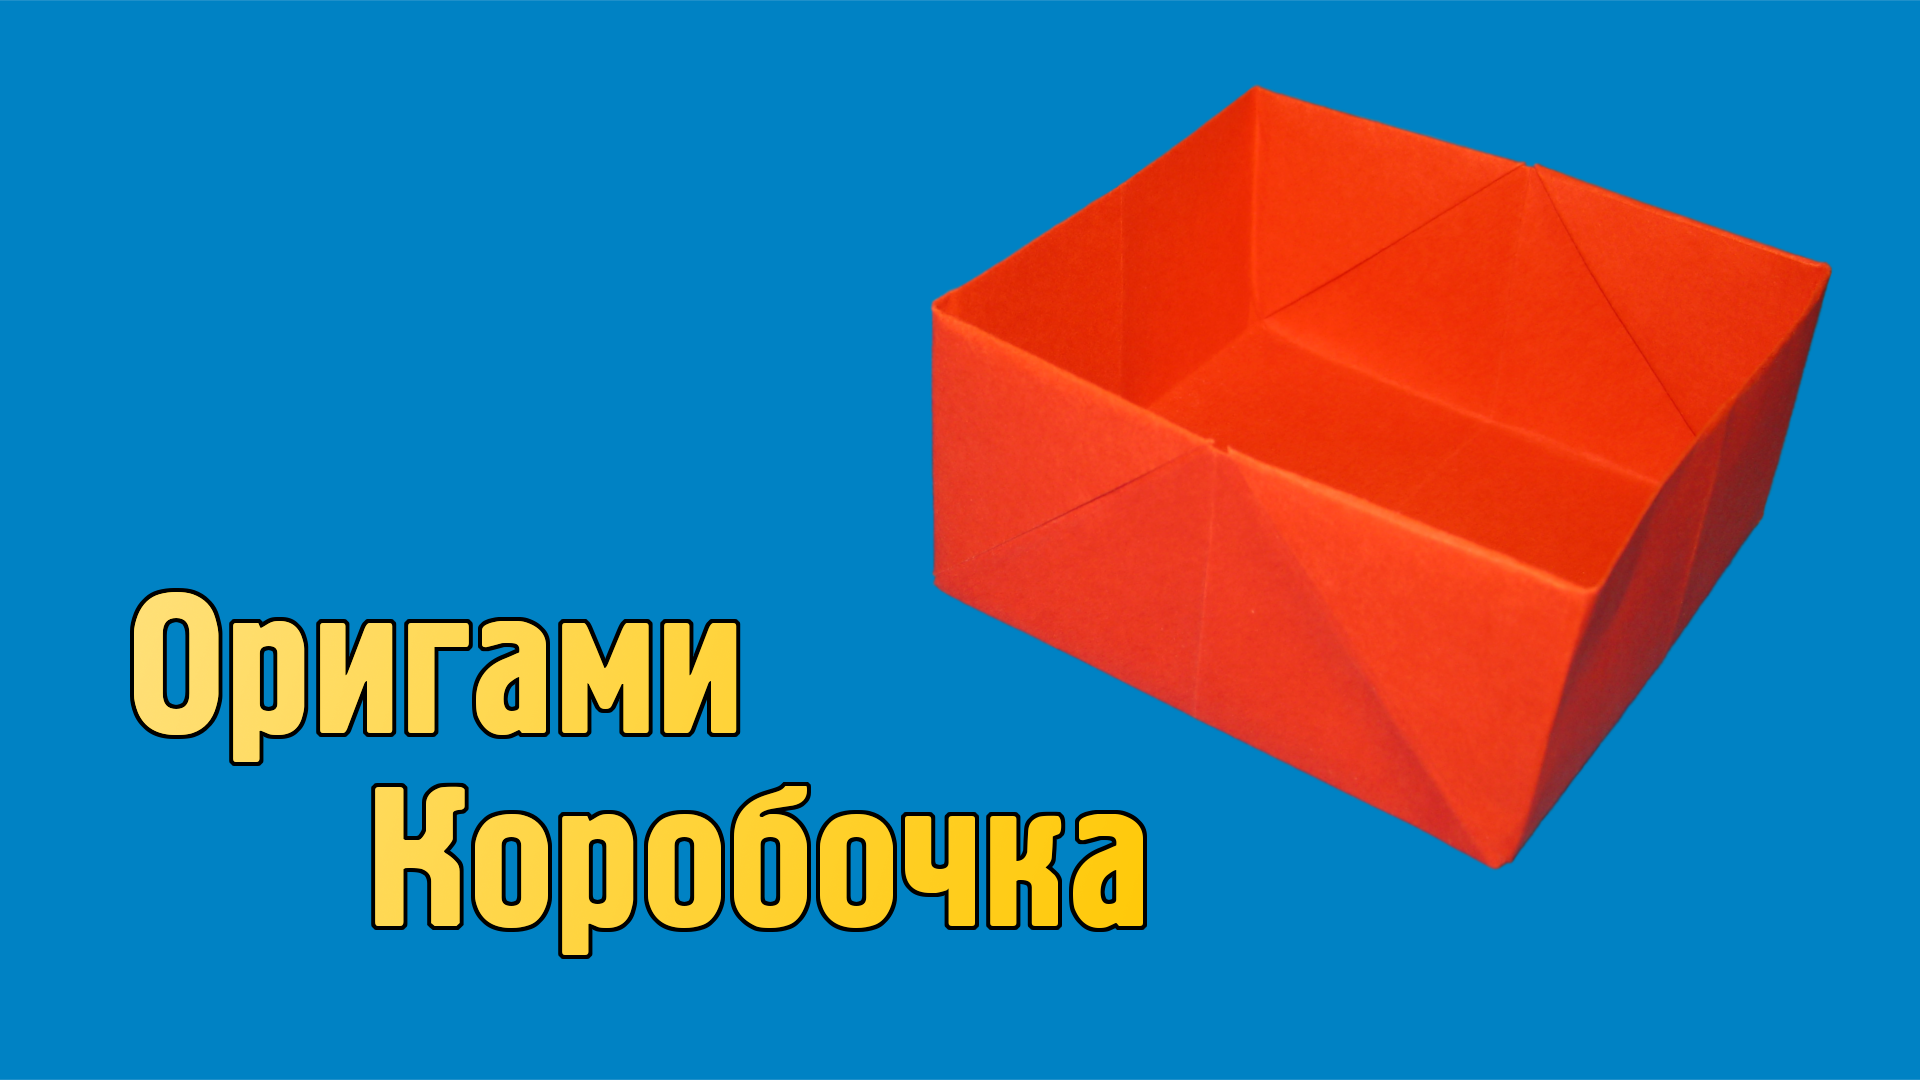 Как сделать Коробочку из бумаги квадратную | Оригами Коробочка своими руками без клея для детей